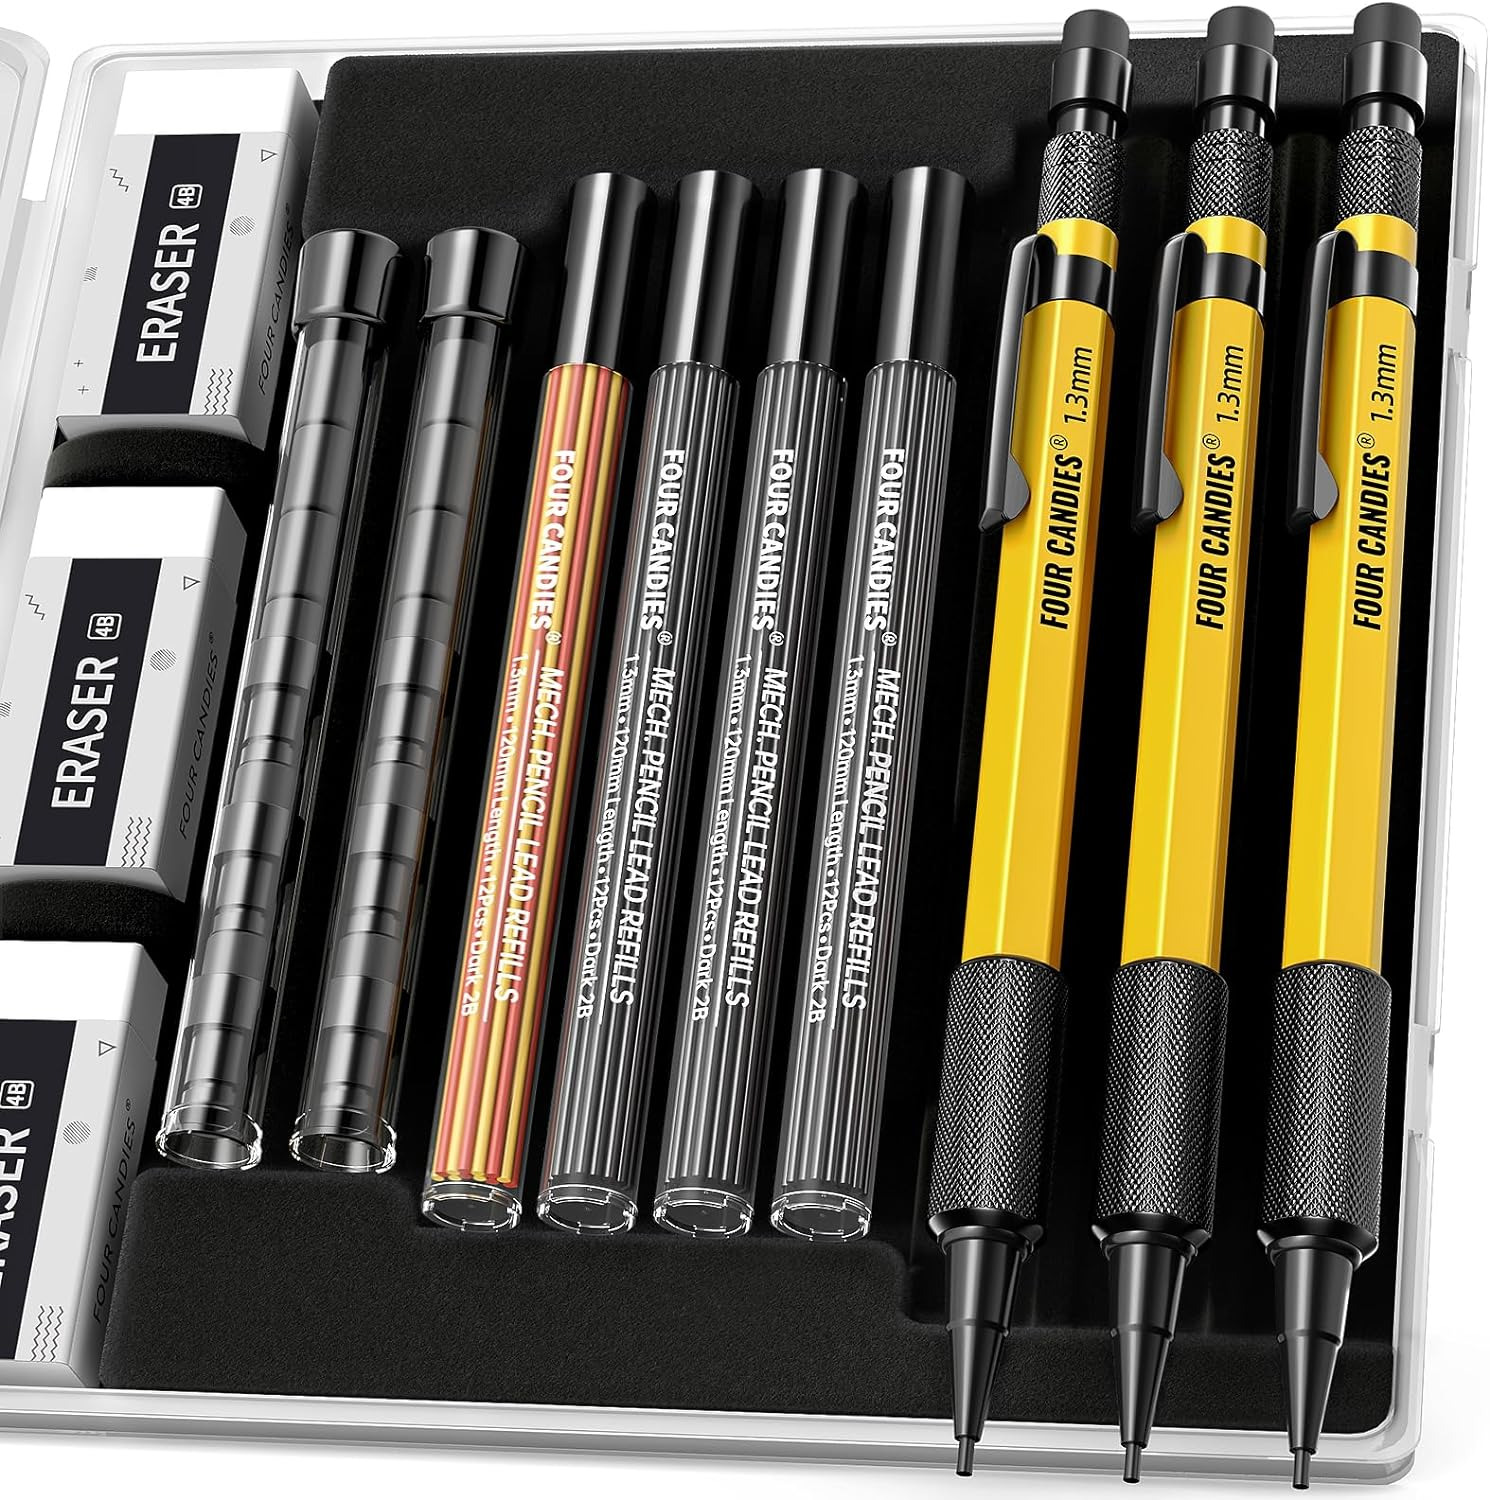 Four Candies 3PCS 1.3Mm Mechanical Pencil Set with Case, Metal Heavy Duty Carpen